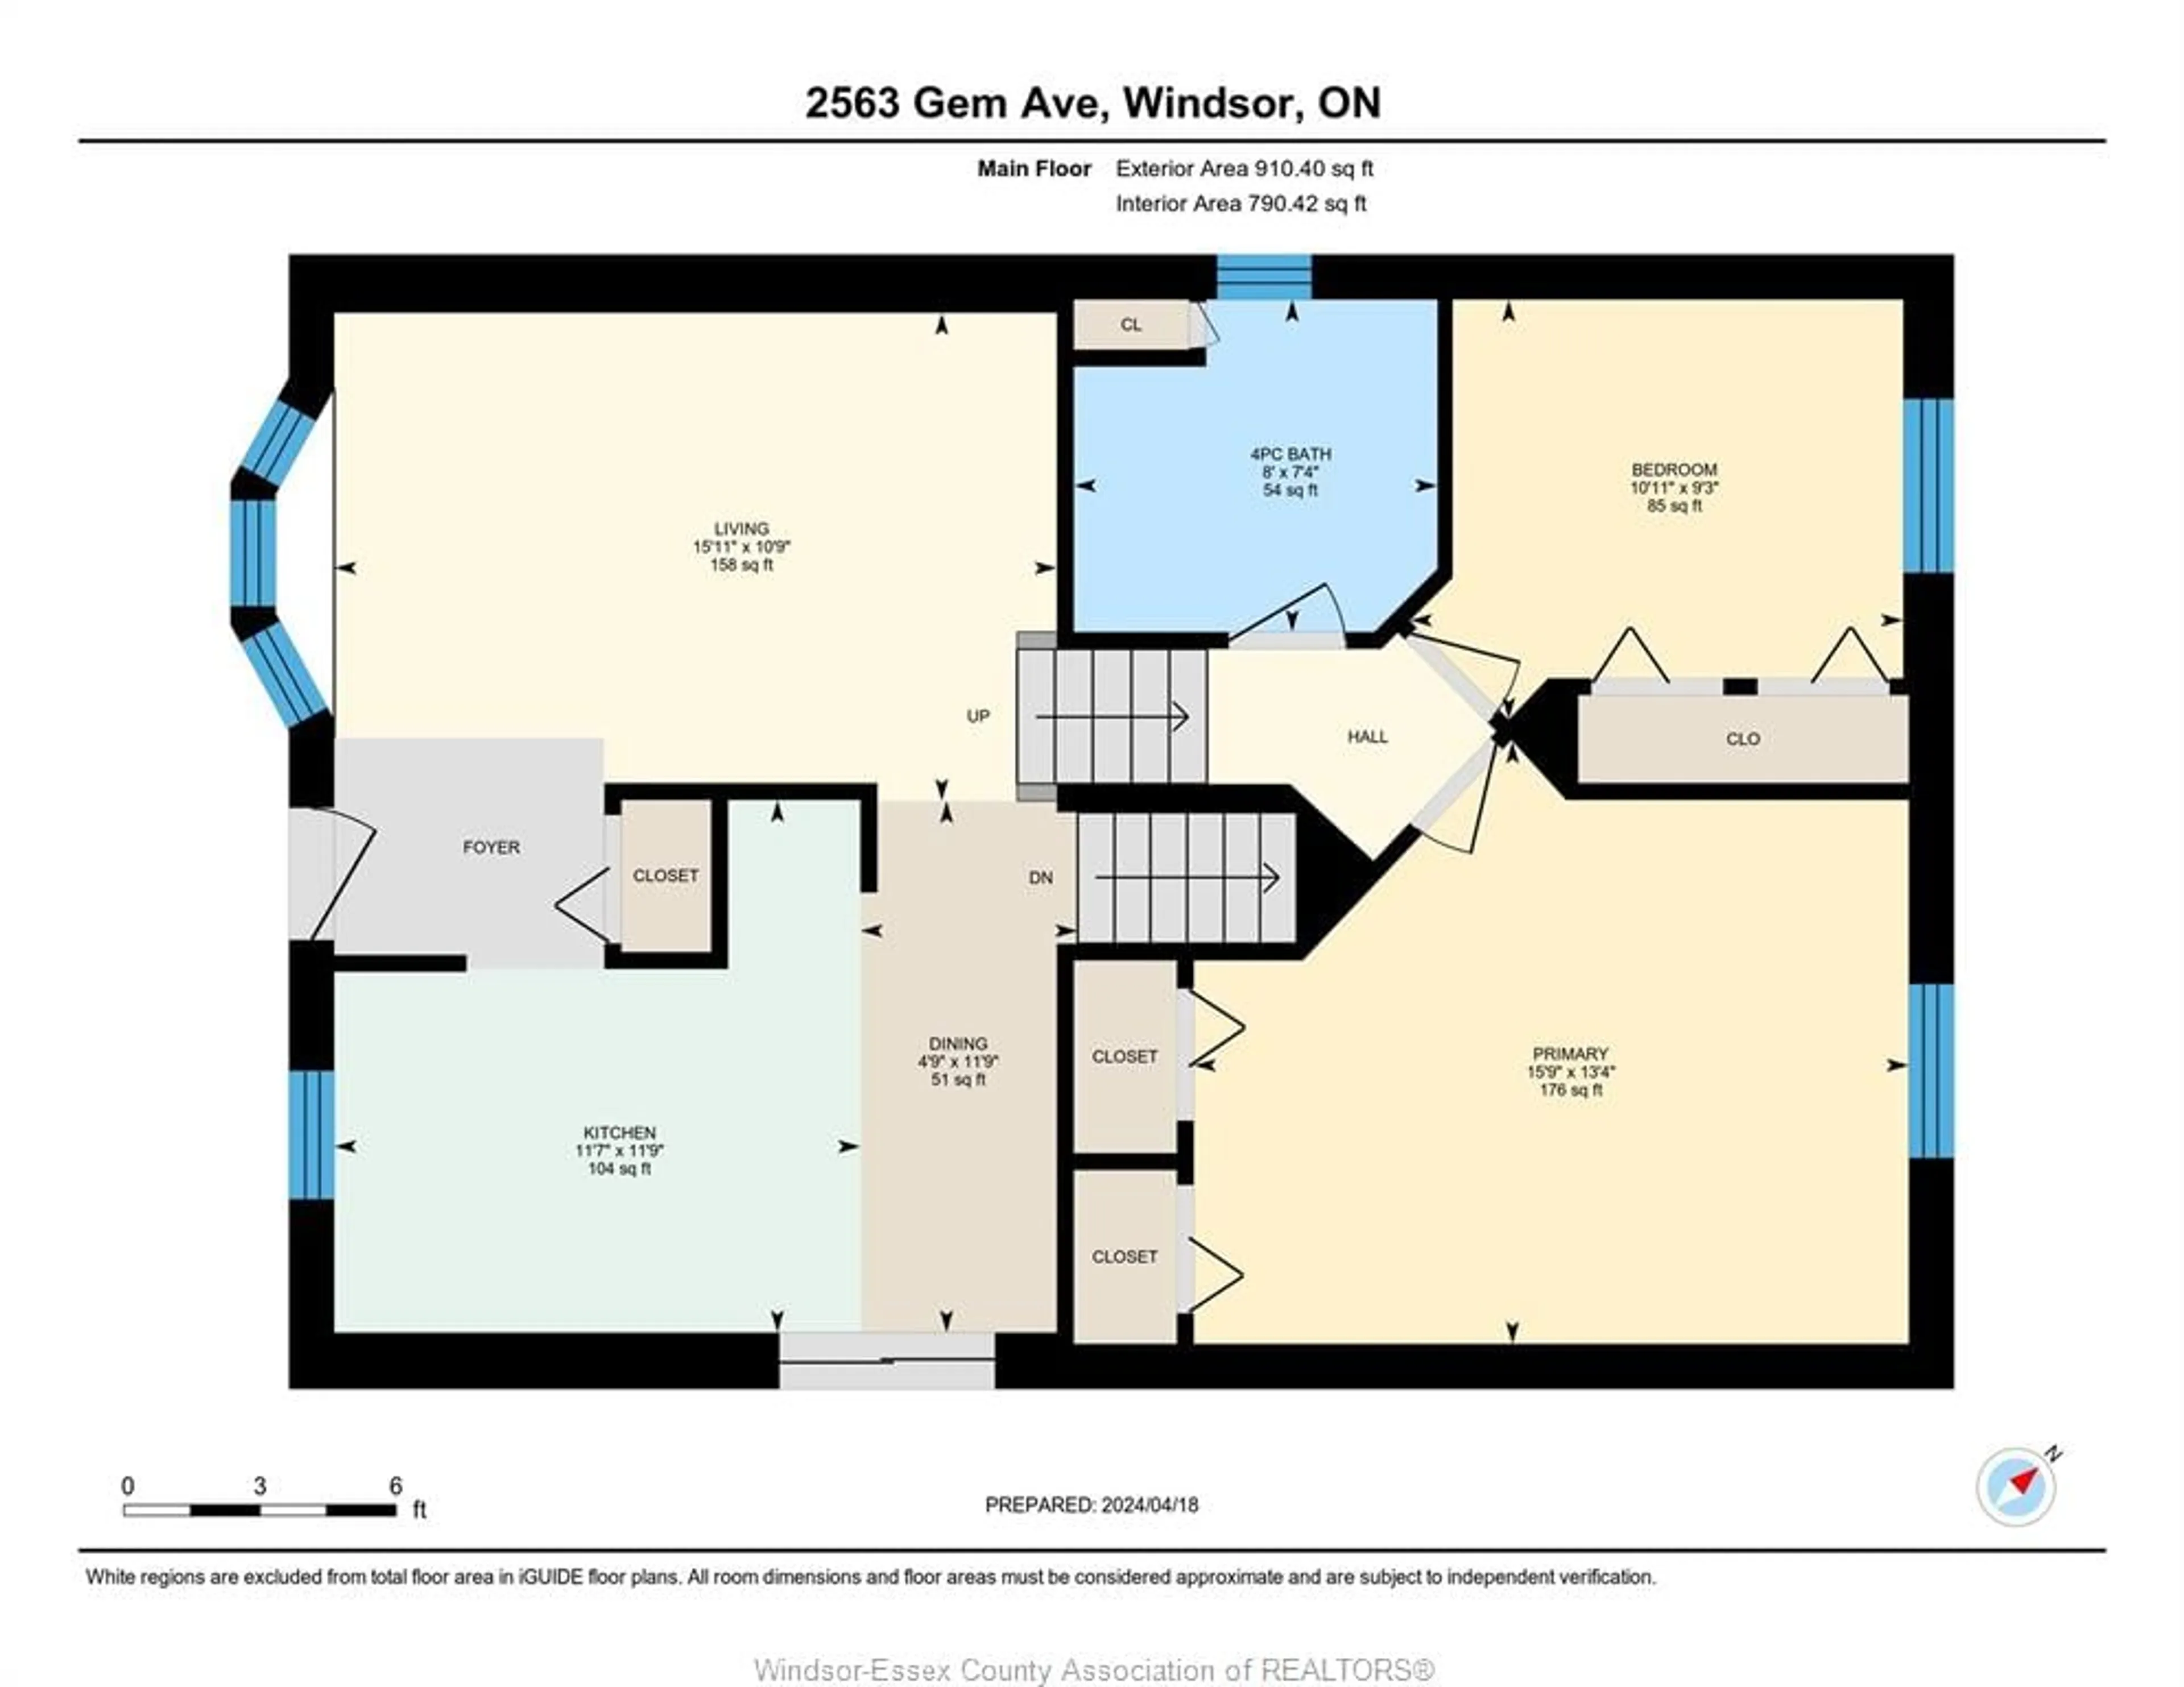 Floor plan for 2563 Gem Ave, Windsor Ontario N8W 5N9